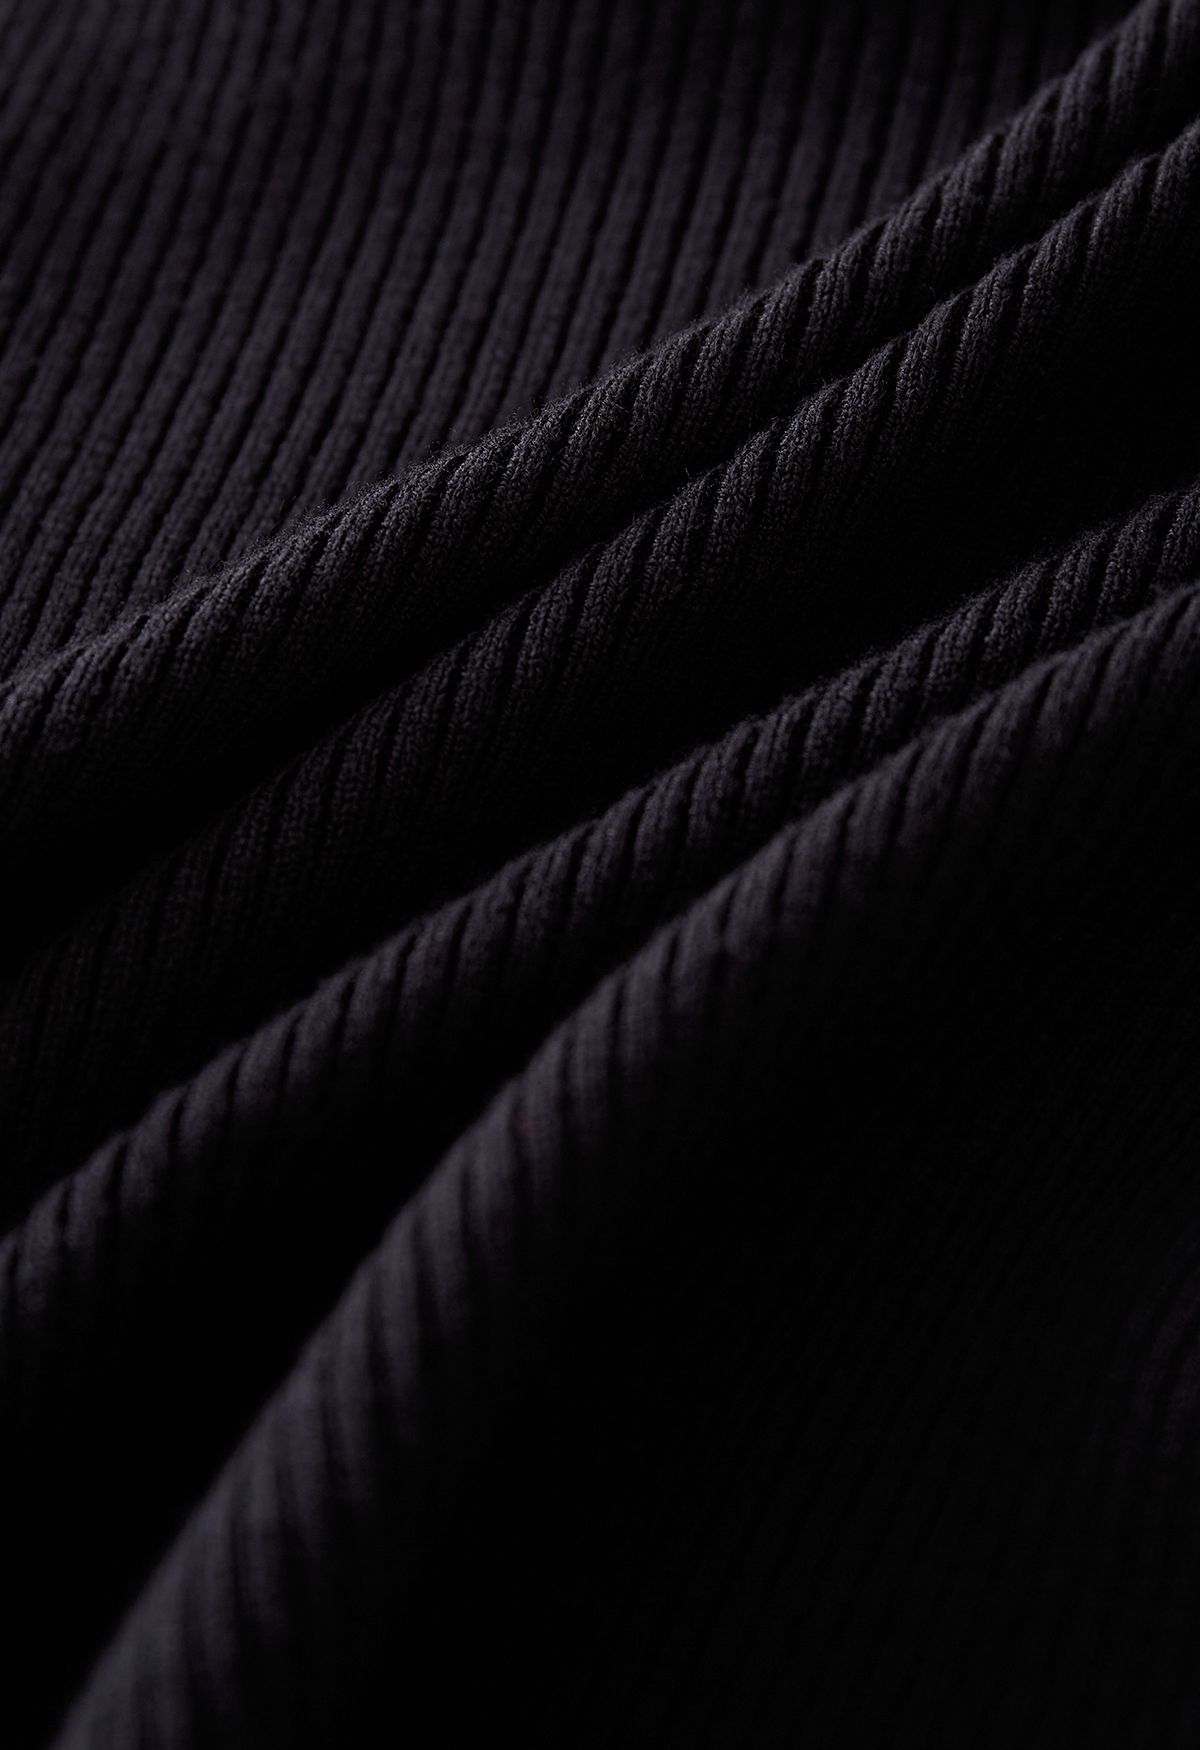 Crisscross Tie Waist Wrap Knit Top in Black